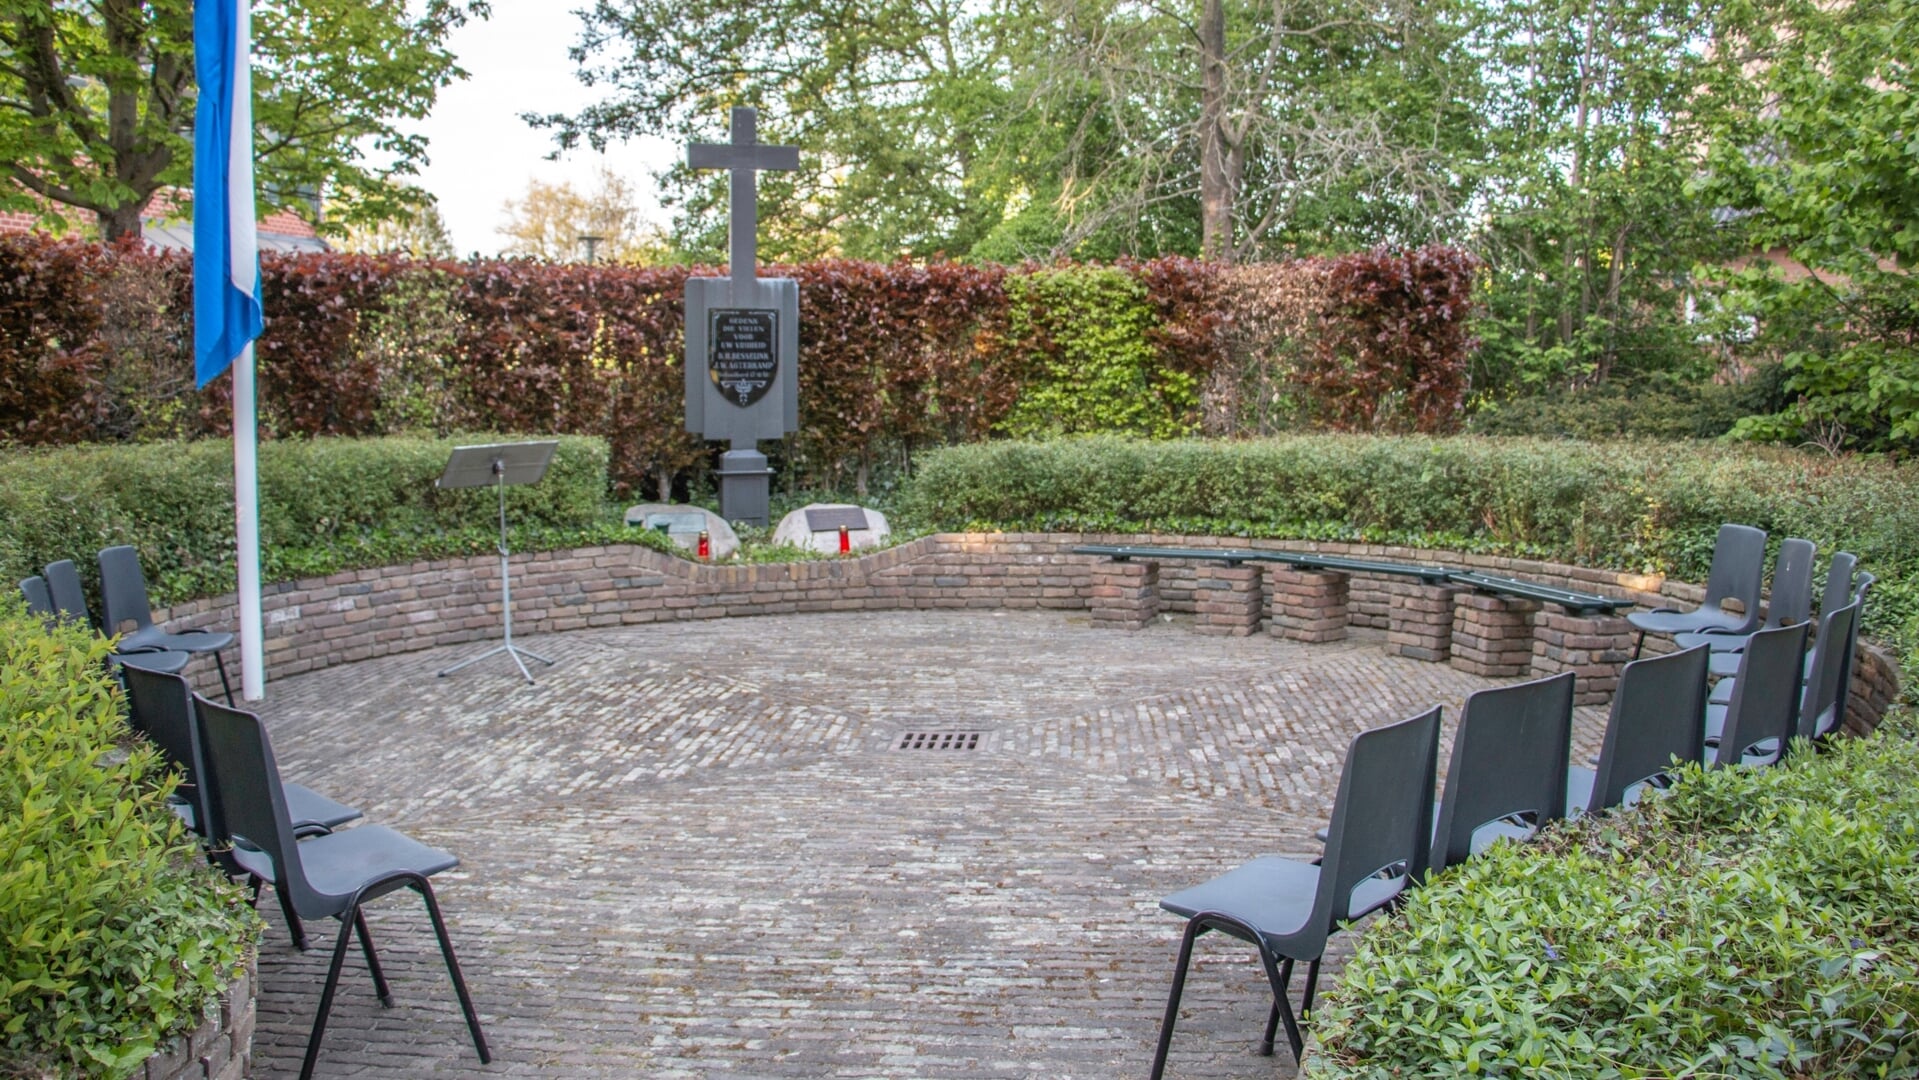 Herdenking bij het monument in Steenderen. Foto: Liesbeth Spaansen